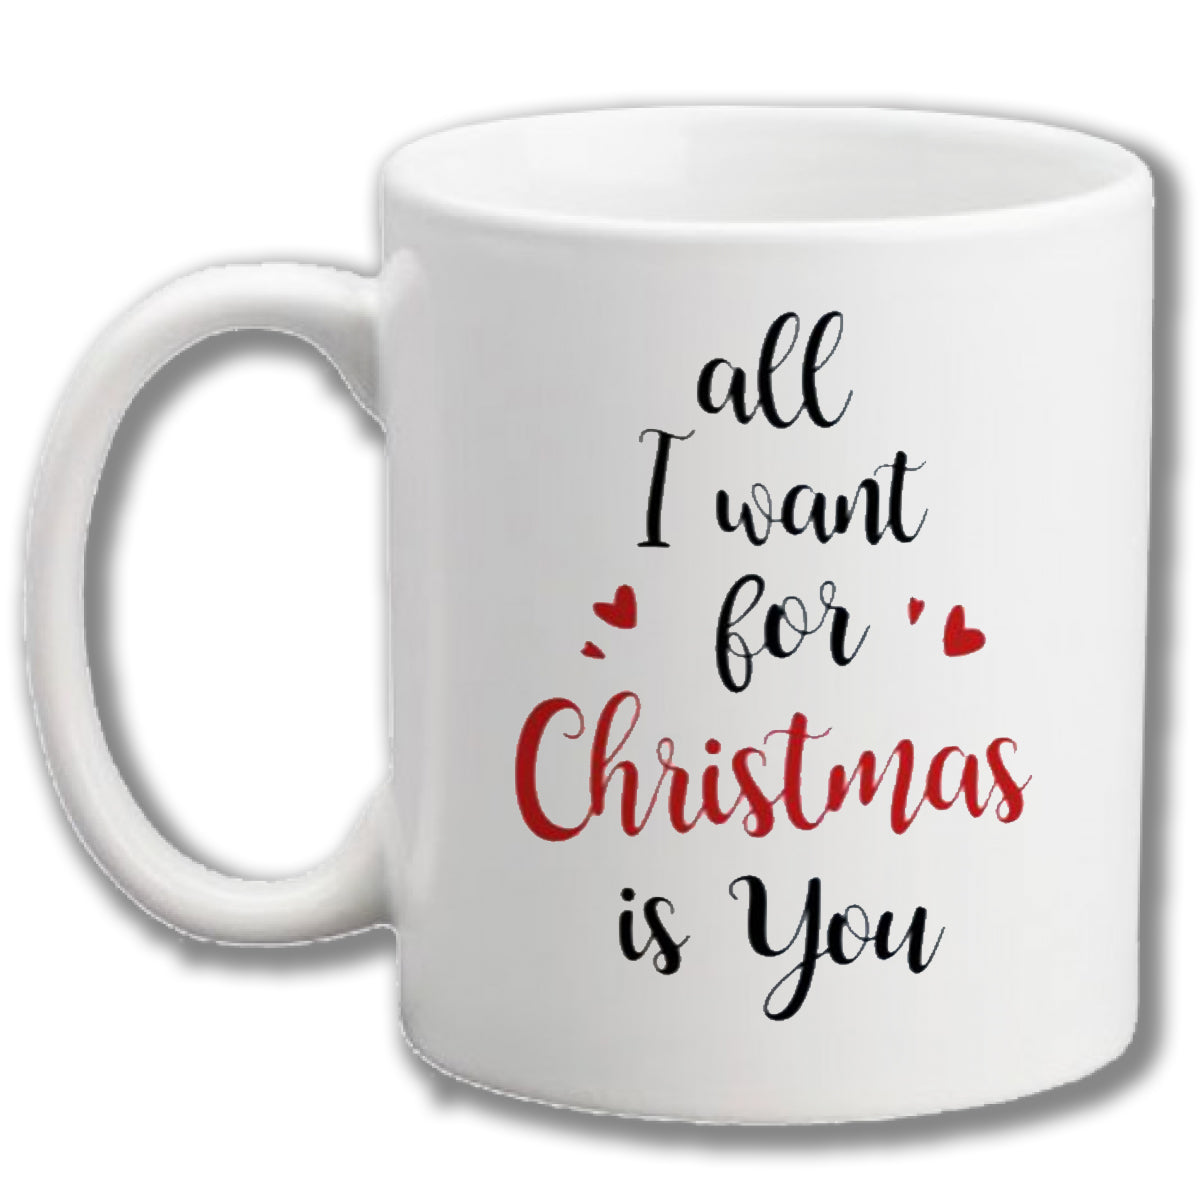 Christmas mug (All I want for Christmas)